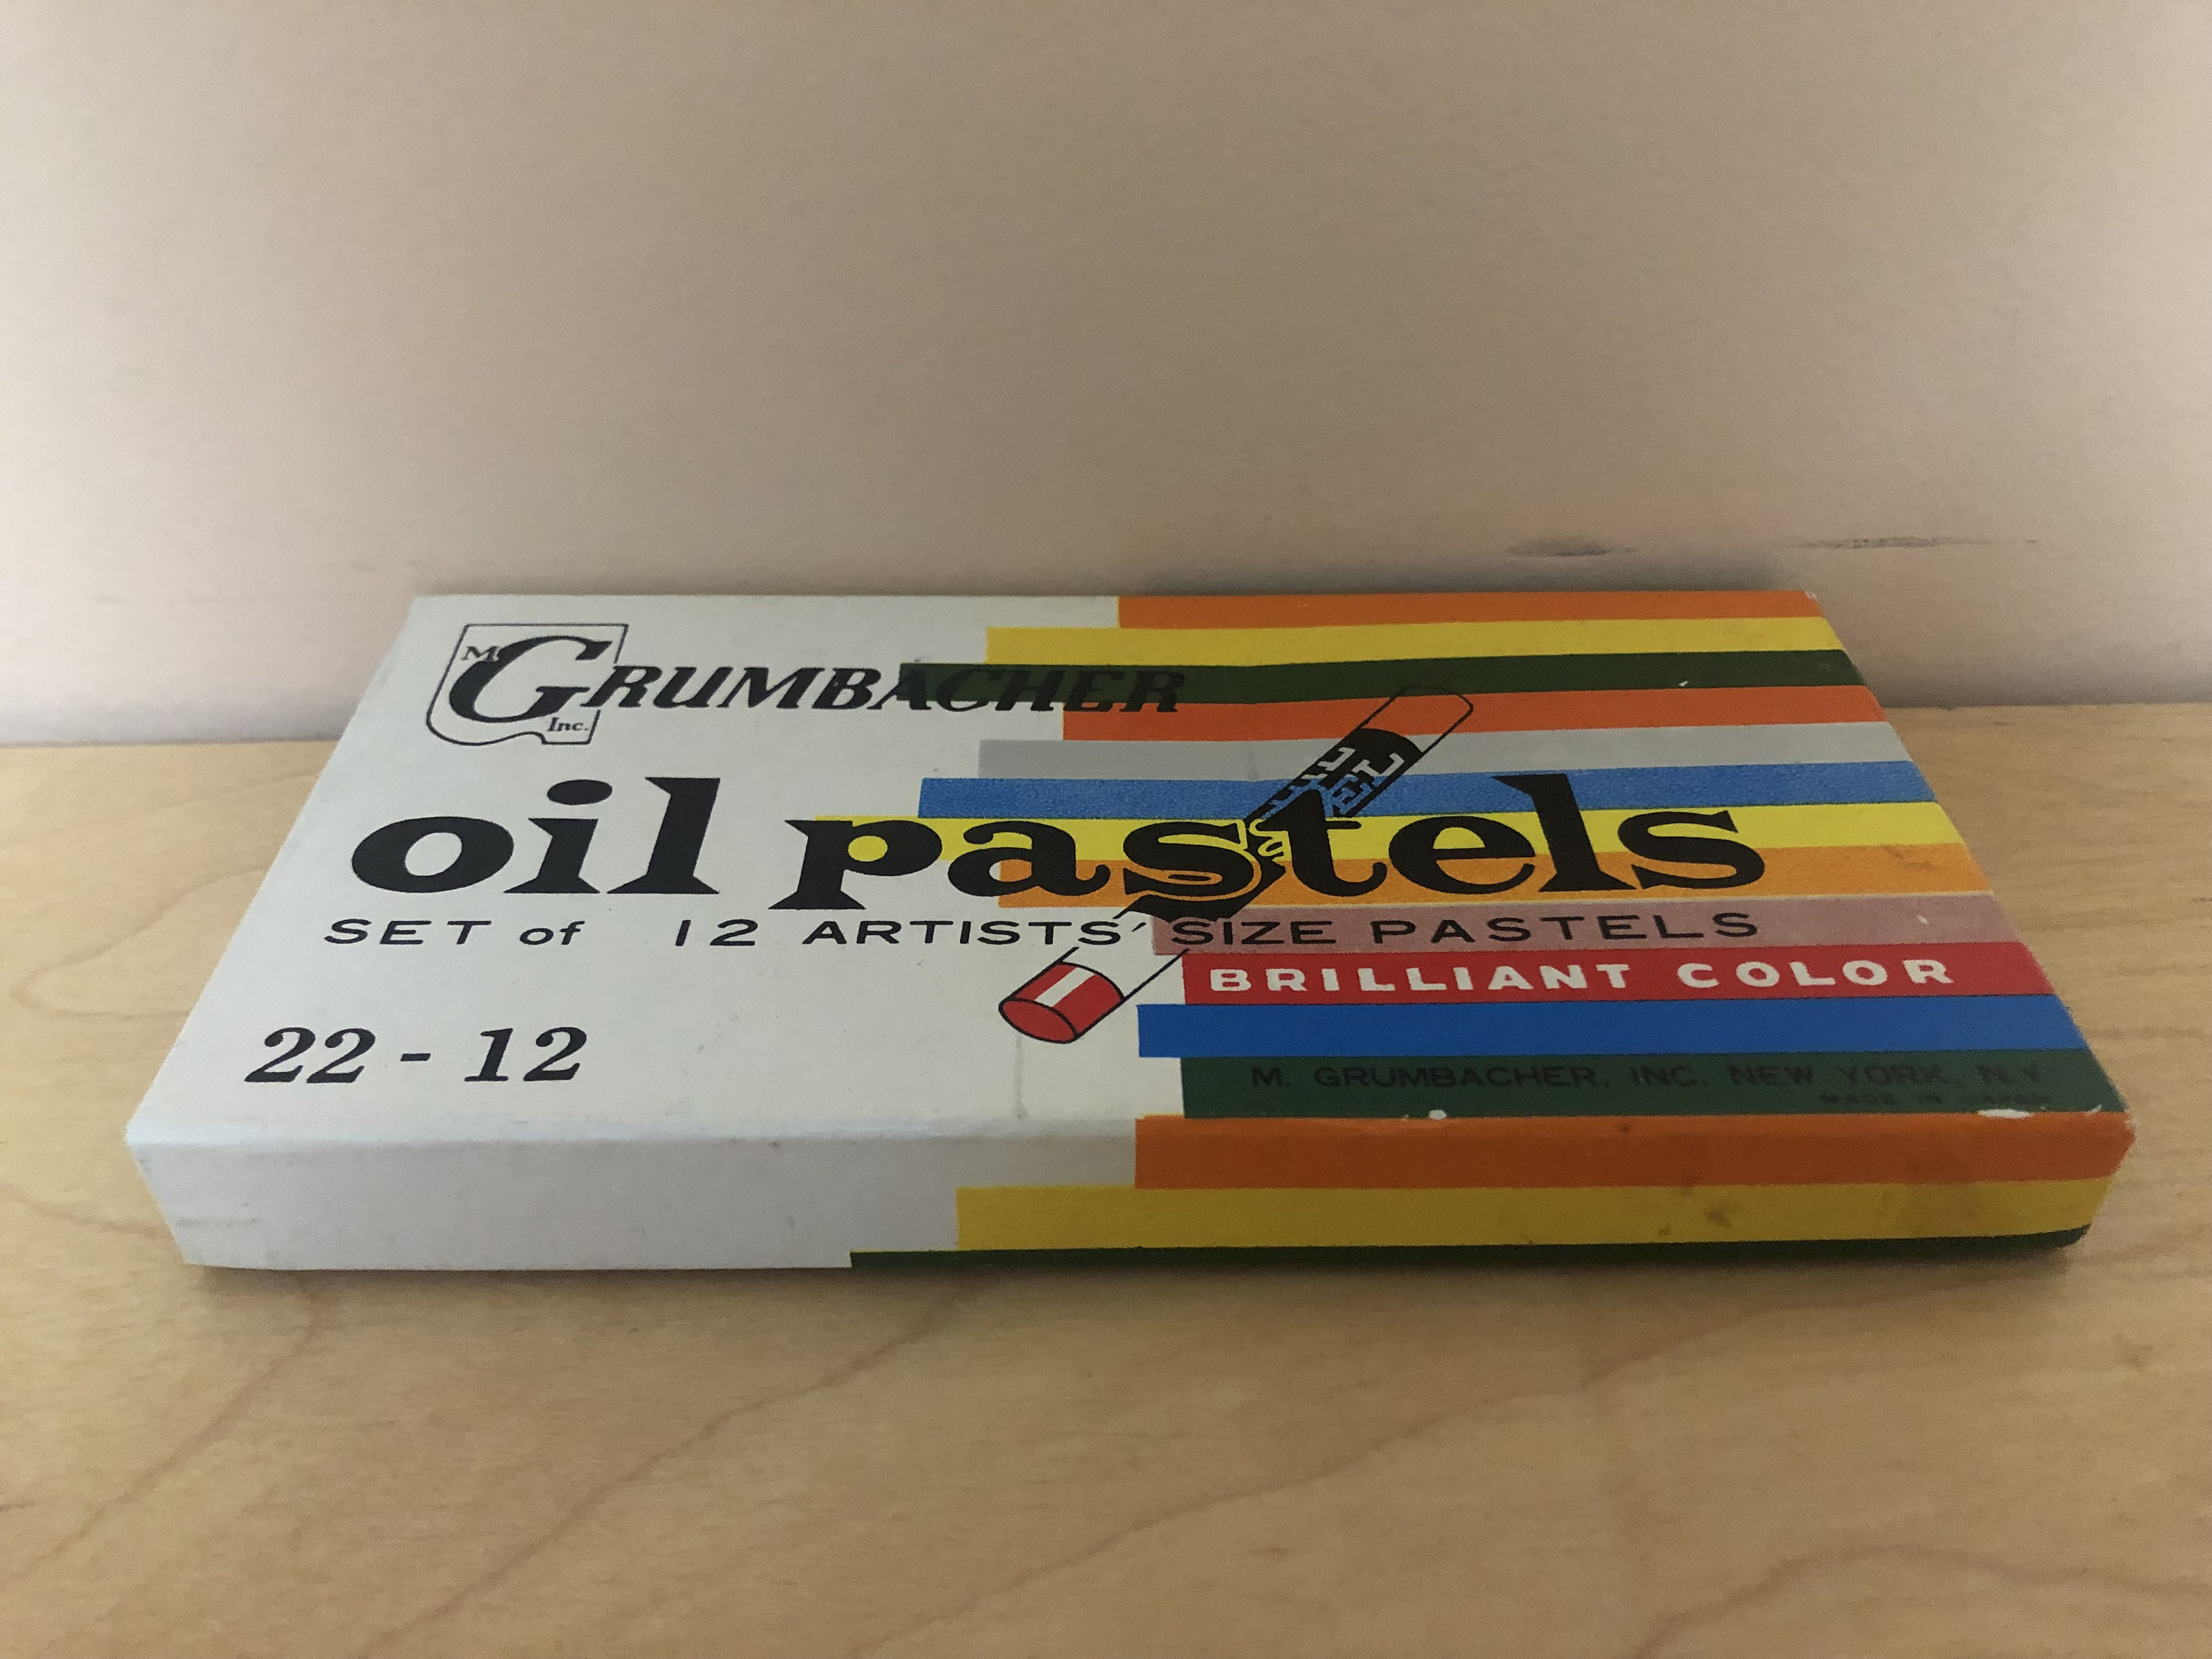 Pentel Oil Pastel Set, 25 Colors, 6 Sets